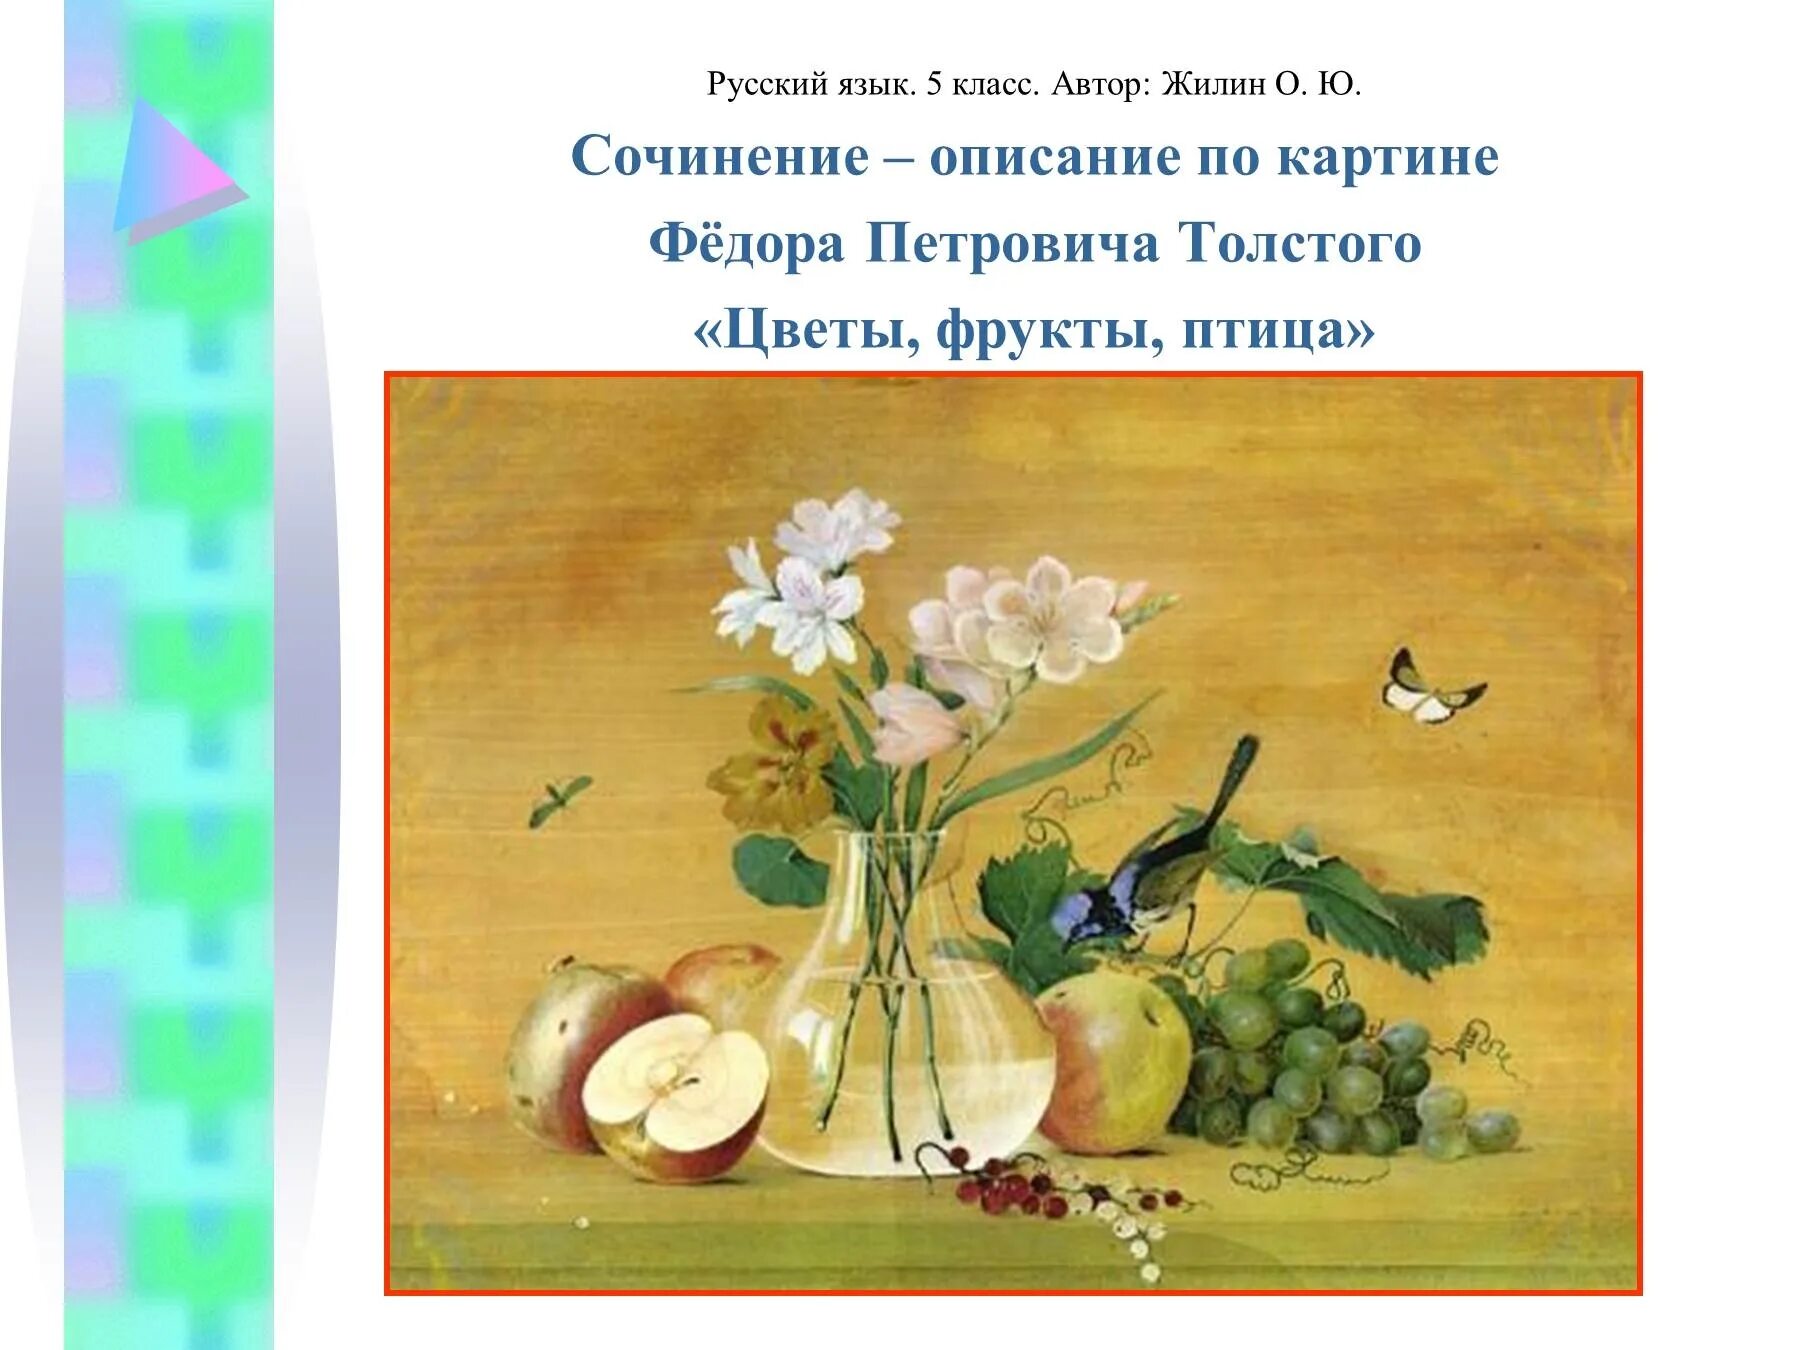 Сочинение описание картины 5 класс 4 четверть. Ф.П. Толстого "цветы, фрукты и птица". Федора Петровича Толстого «цветы, фрукты, птица».